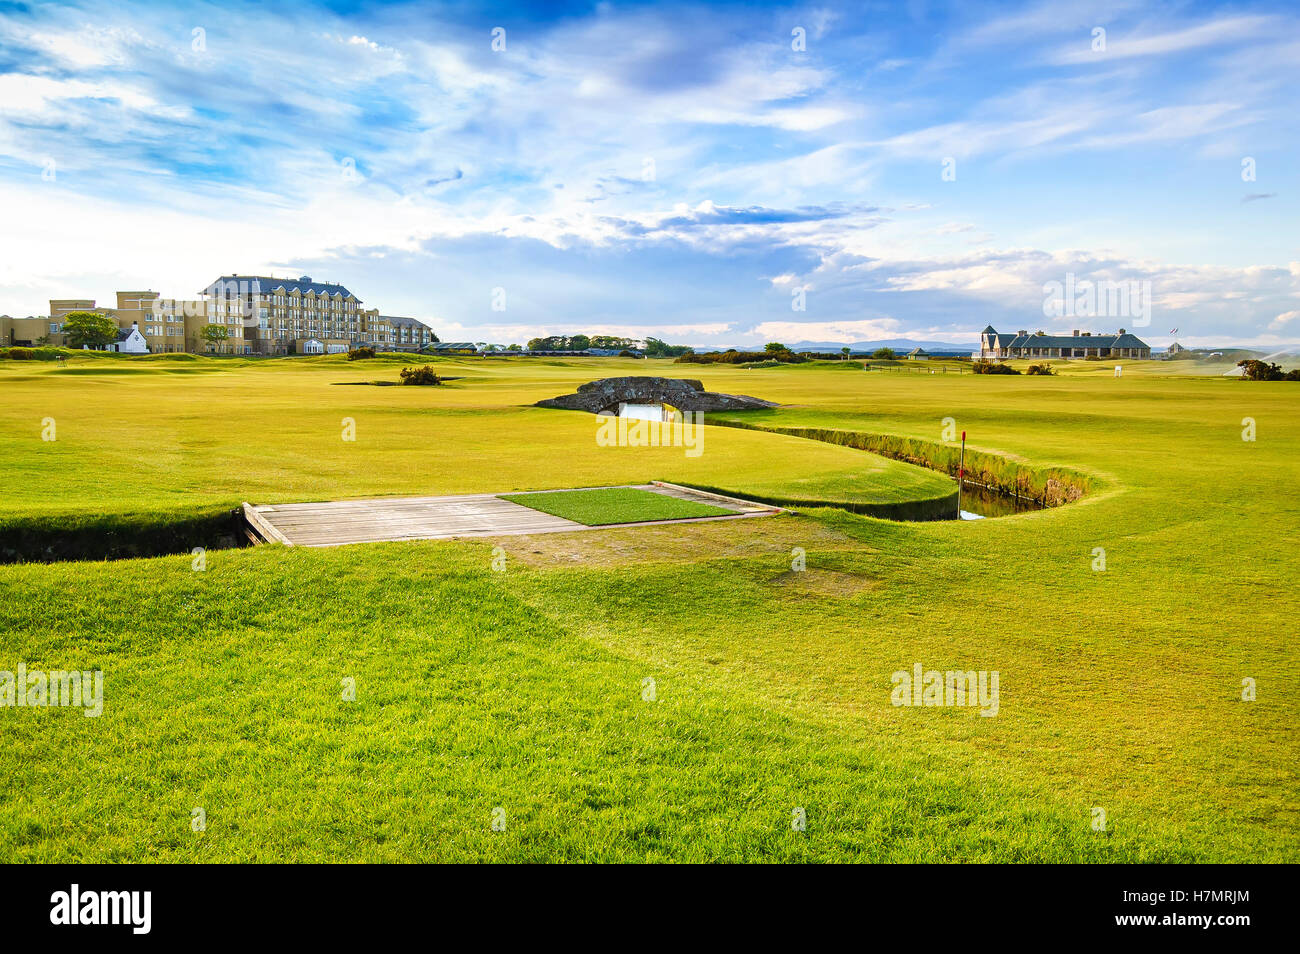 Golf Old Course St Andrews links, fairway et pont de pierre sur le trou 18. Fife, Scotland, UK, Europe. Banque D'Images